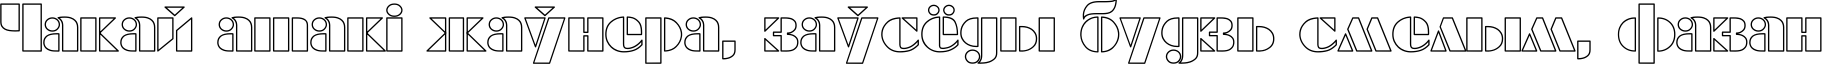 Пример написания шрифтом FuturaEugenia Ho текста на белорусском